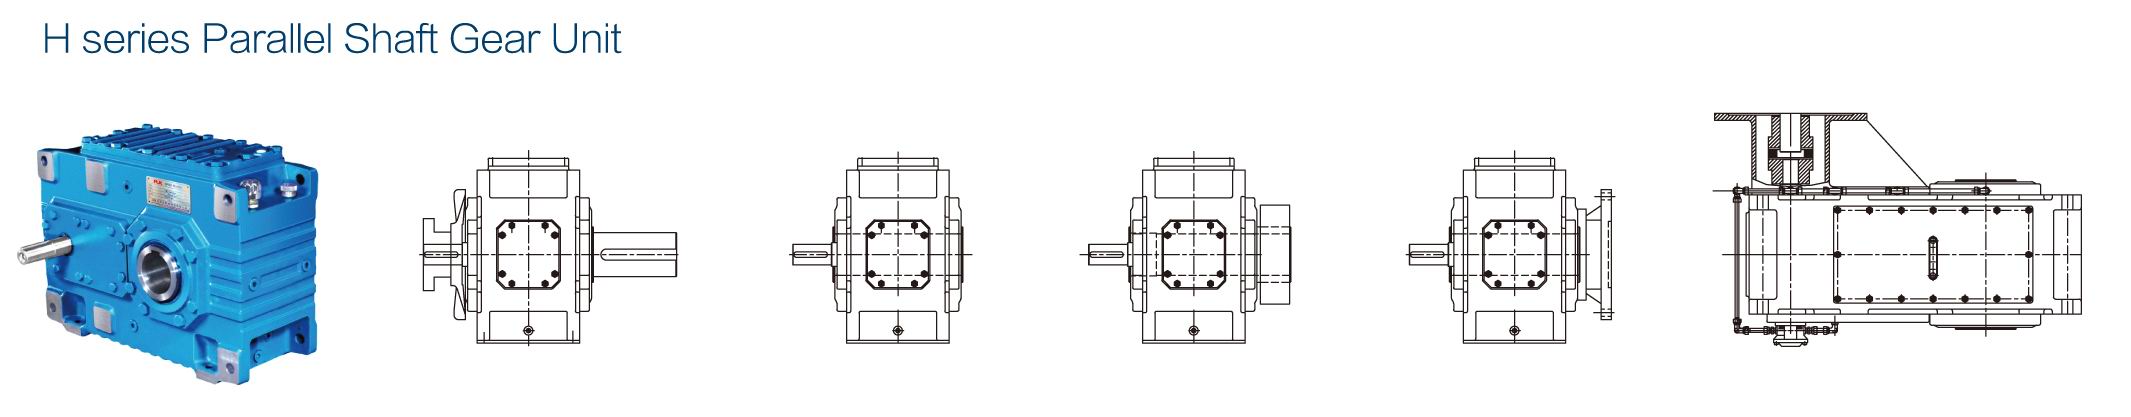 Diseño modular del reductor de ejes paralelos